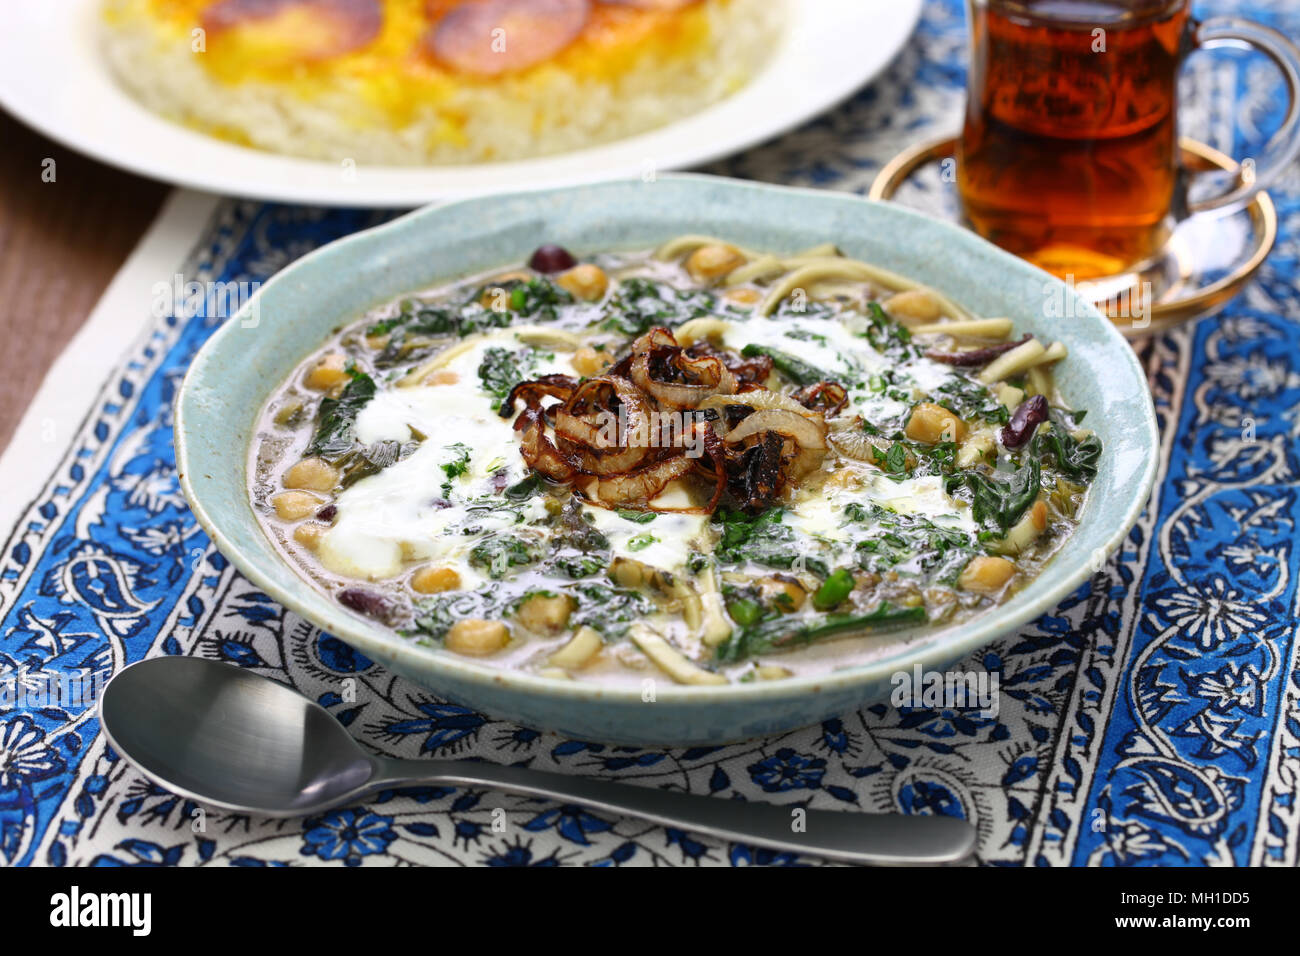 Ceneri reshteh, persiano nuovi anni noodle soup Foto Stock